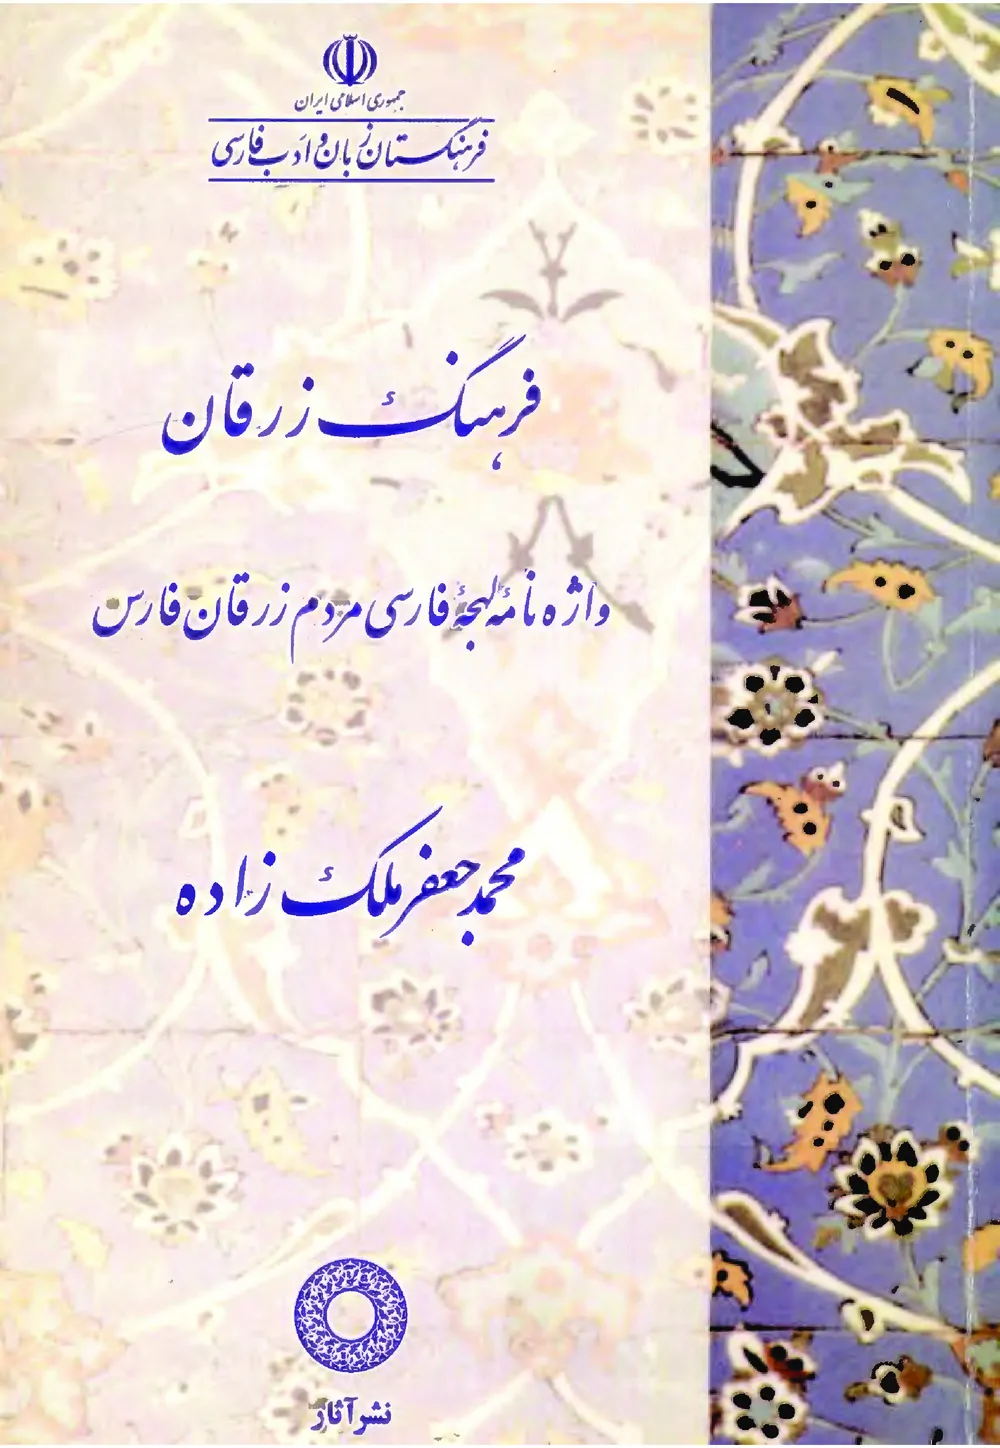 فرهنگ زرقان: واژه نامه لهجه فارسی مردم زرقان فارس